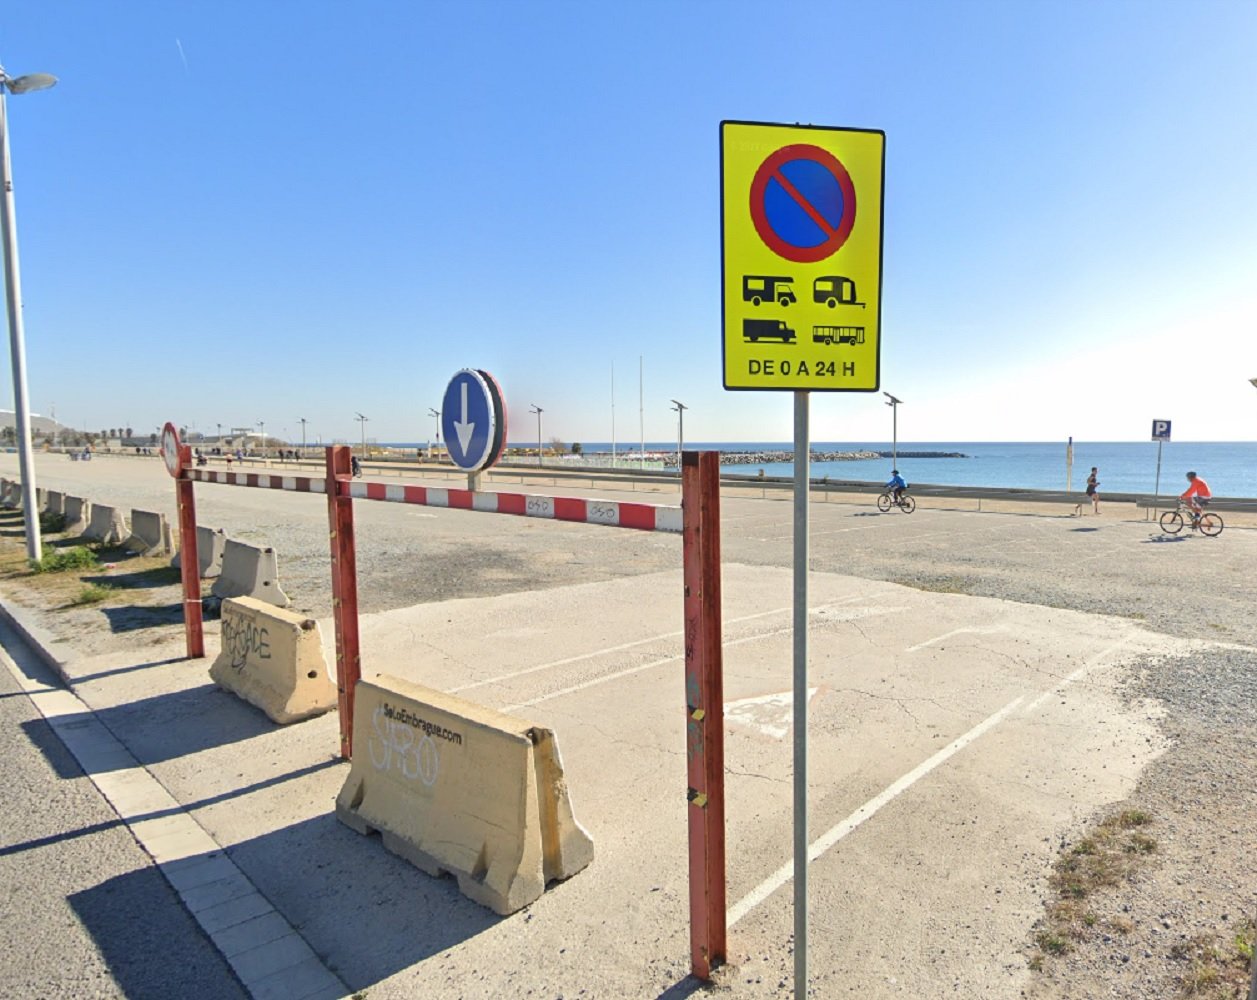 Definitivo: el parking gratuito de la playa de Barcelona no reabrirá nunca más